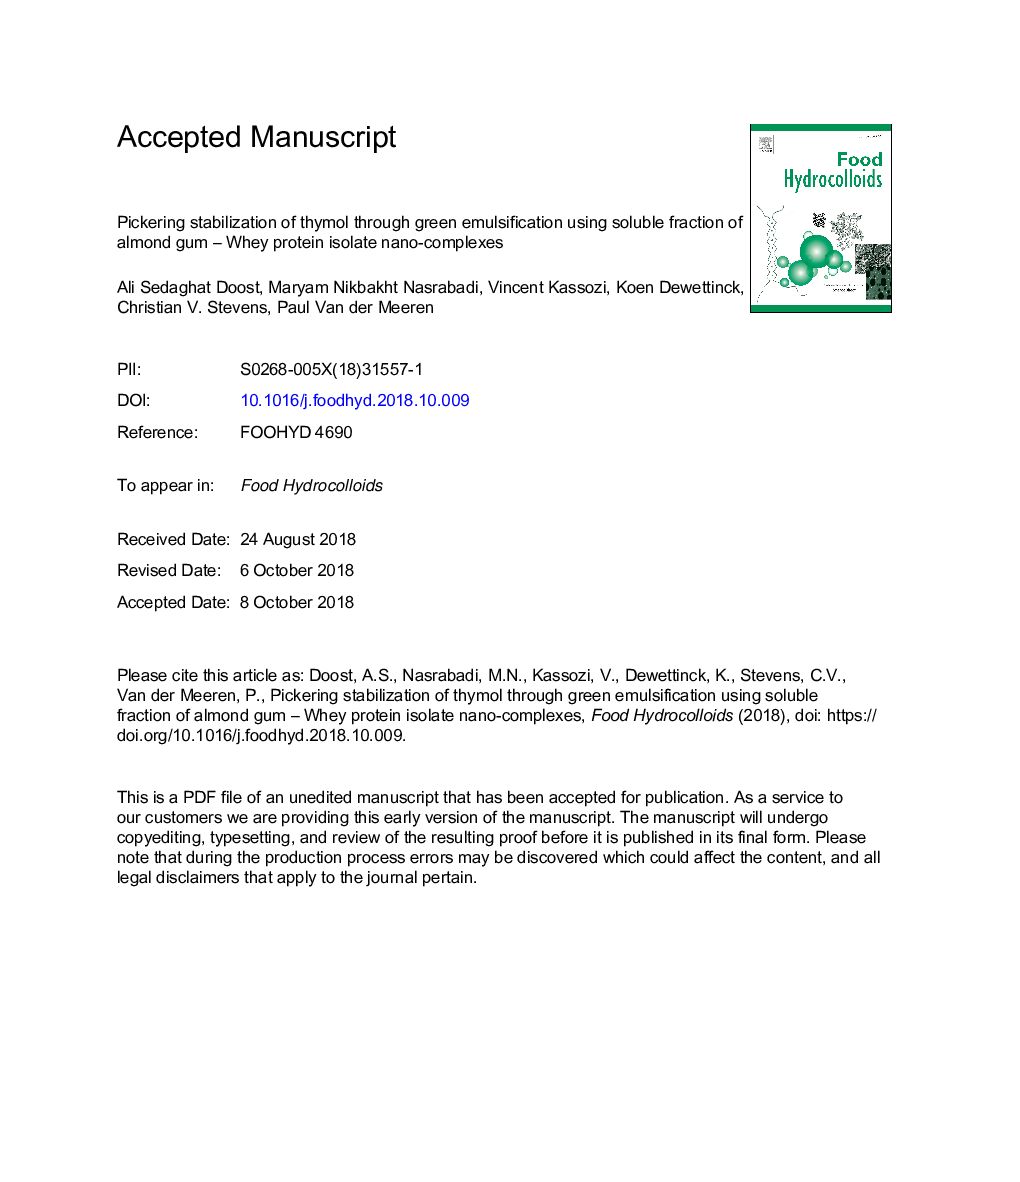 پاک کننده تیمول پاکینگ از طریق امولسیون شدن سبز با استفاده از کلسیم محلول با استفاده از آدامس بادام - پروتئین نانو اکساید